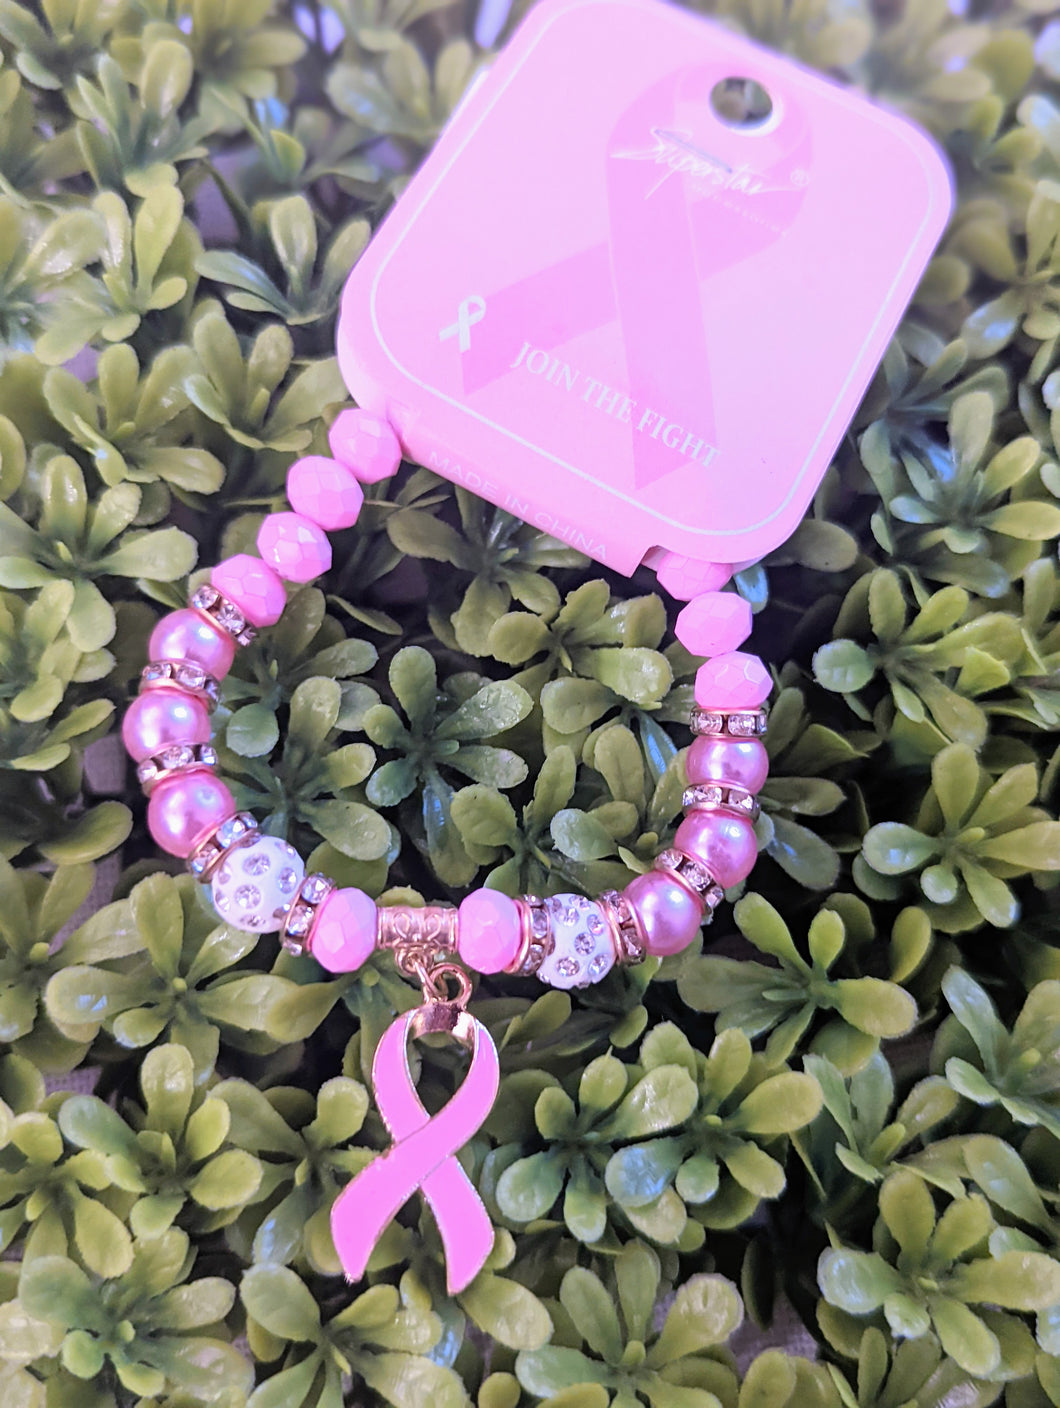 Breast Cancer Bracelet